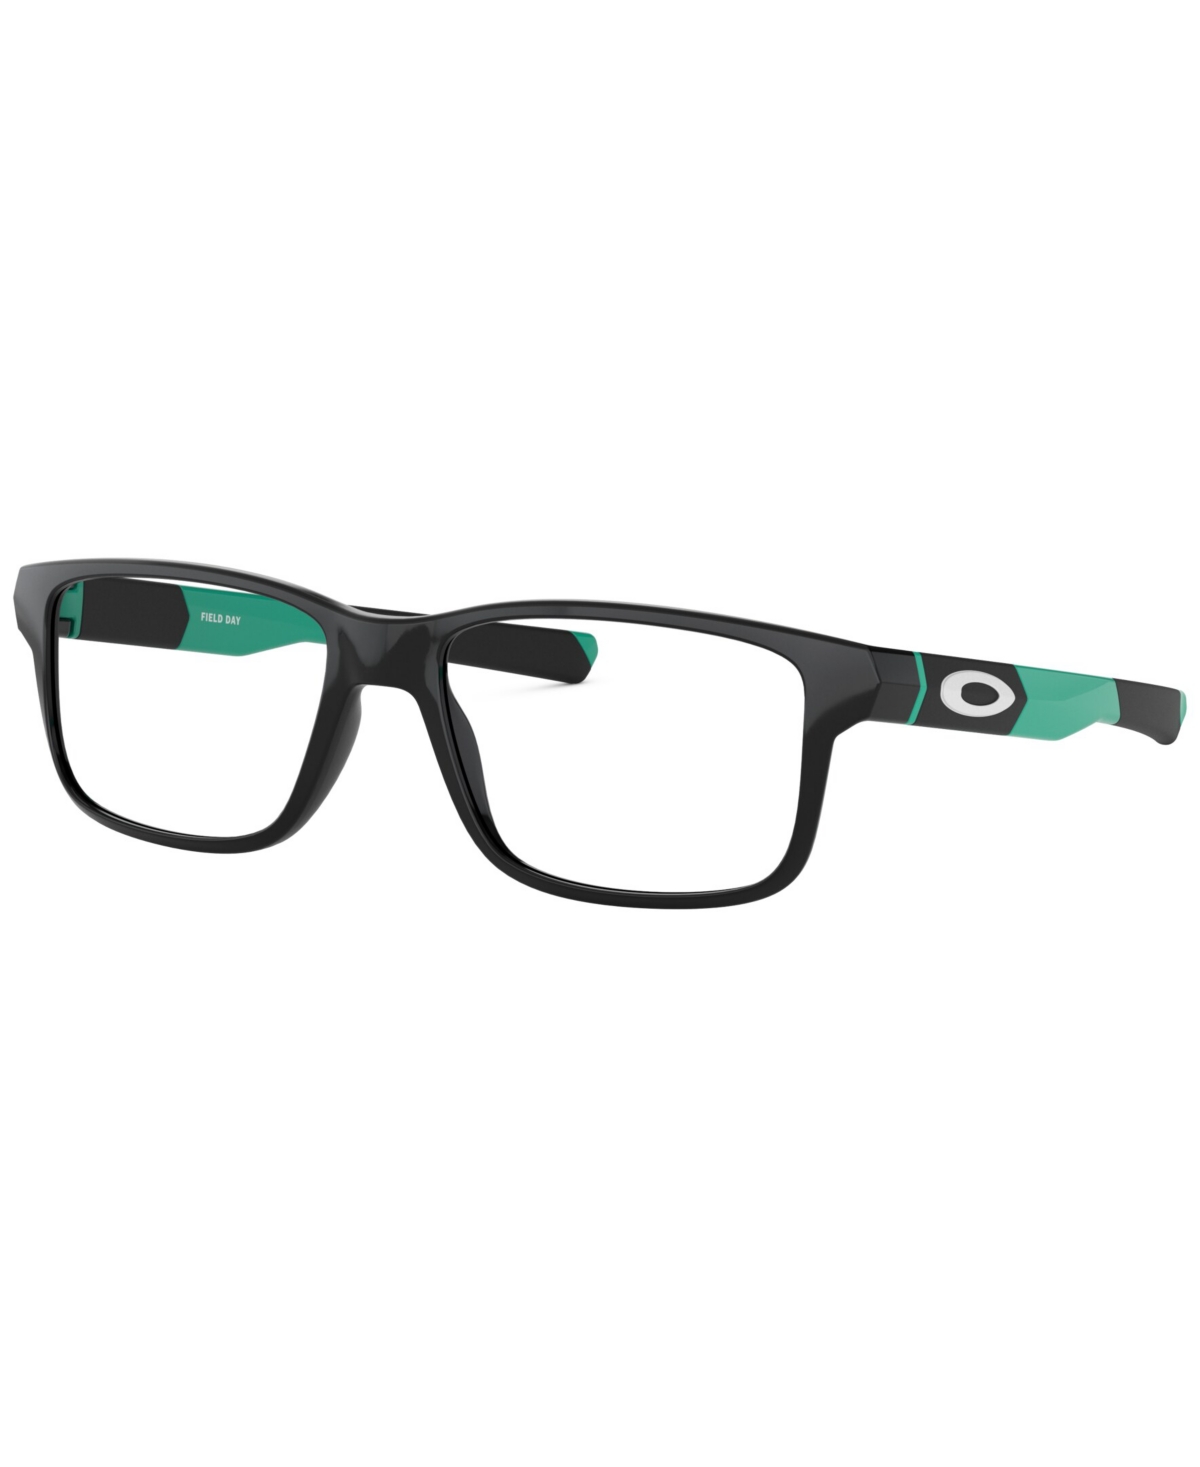 Child Square Eyeglasses, OY8007 - Black